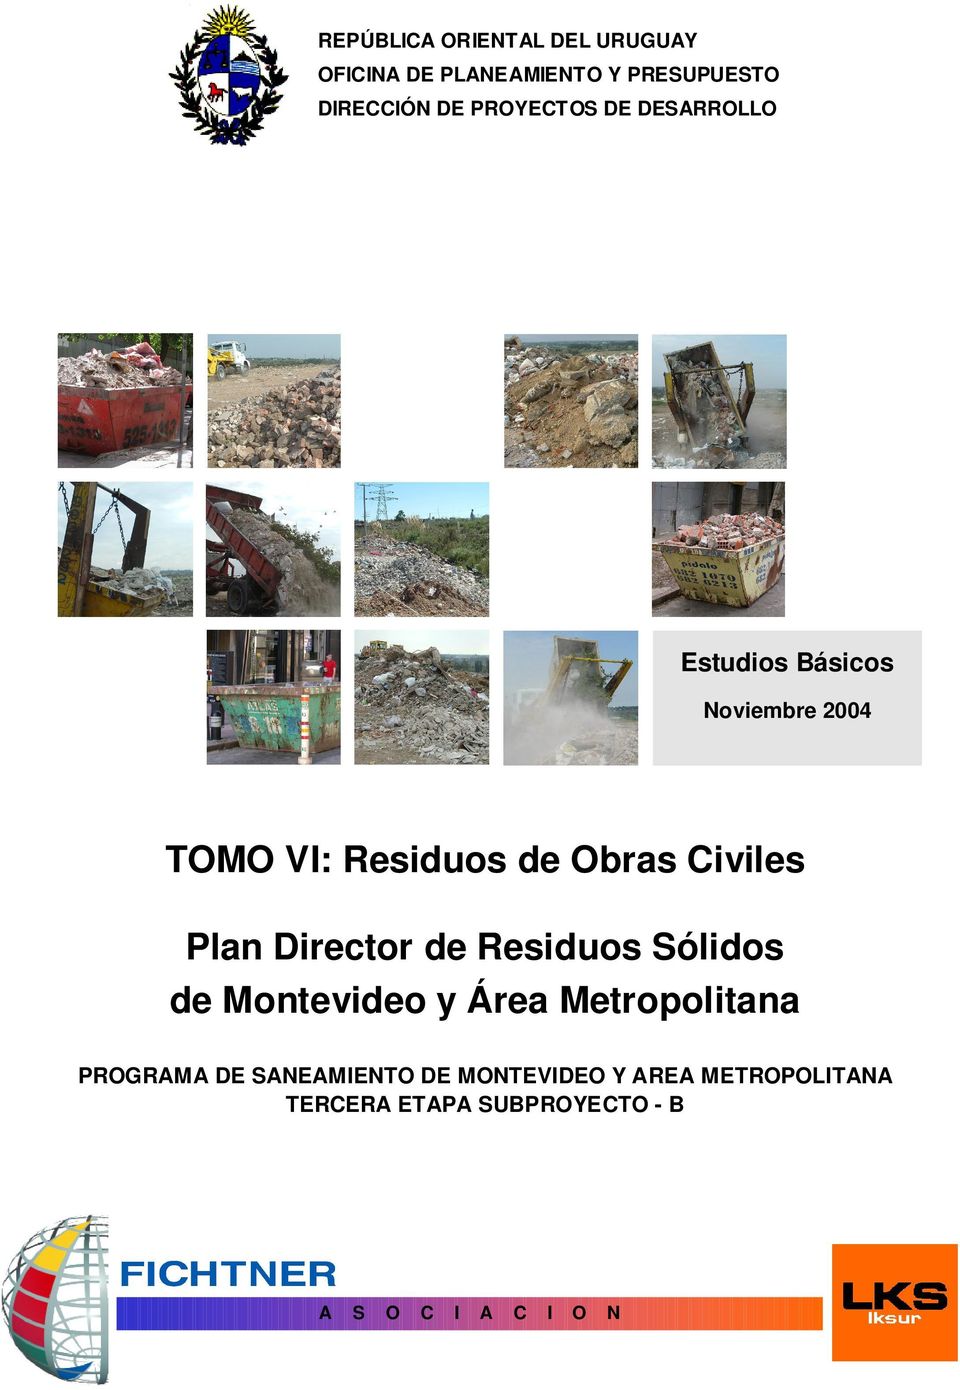 Director de Residuos Sólidos de Montevideo y Área Metropolitana PROGRAMA DE